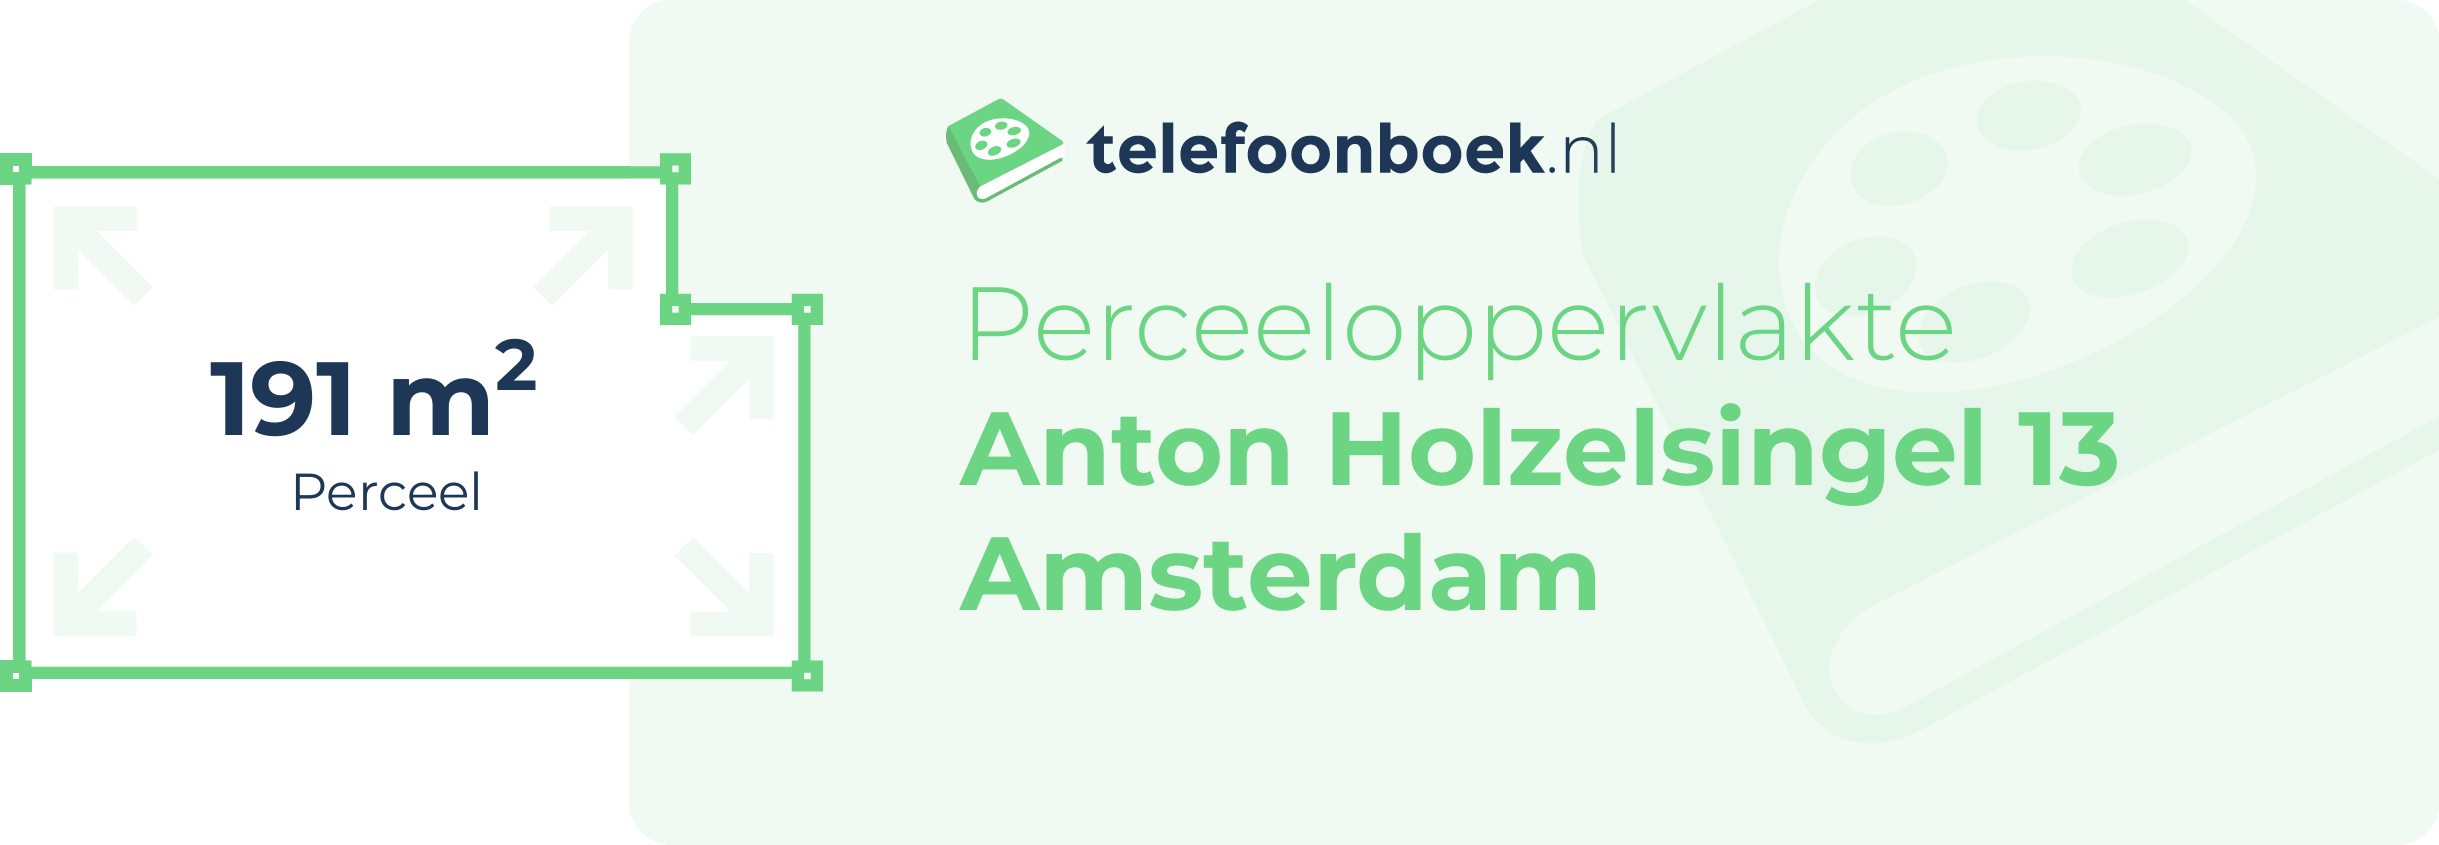 Perceeloppervlakte Anton Holzelsingel 13 Amsterdam